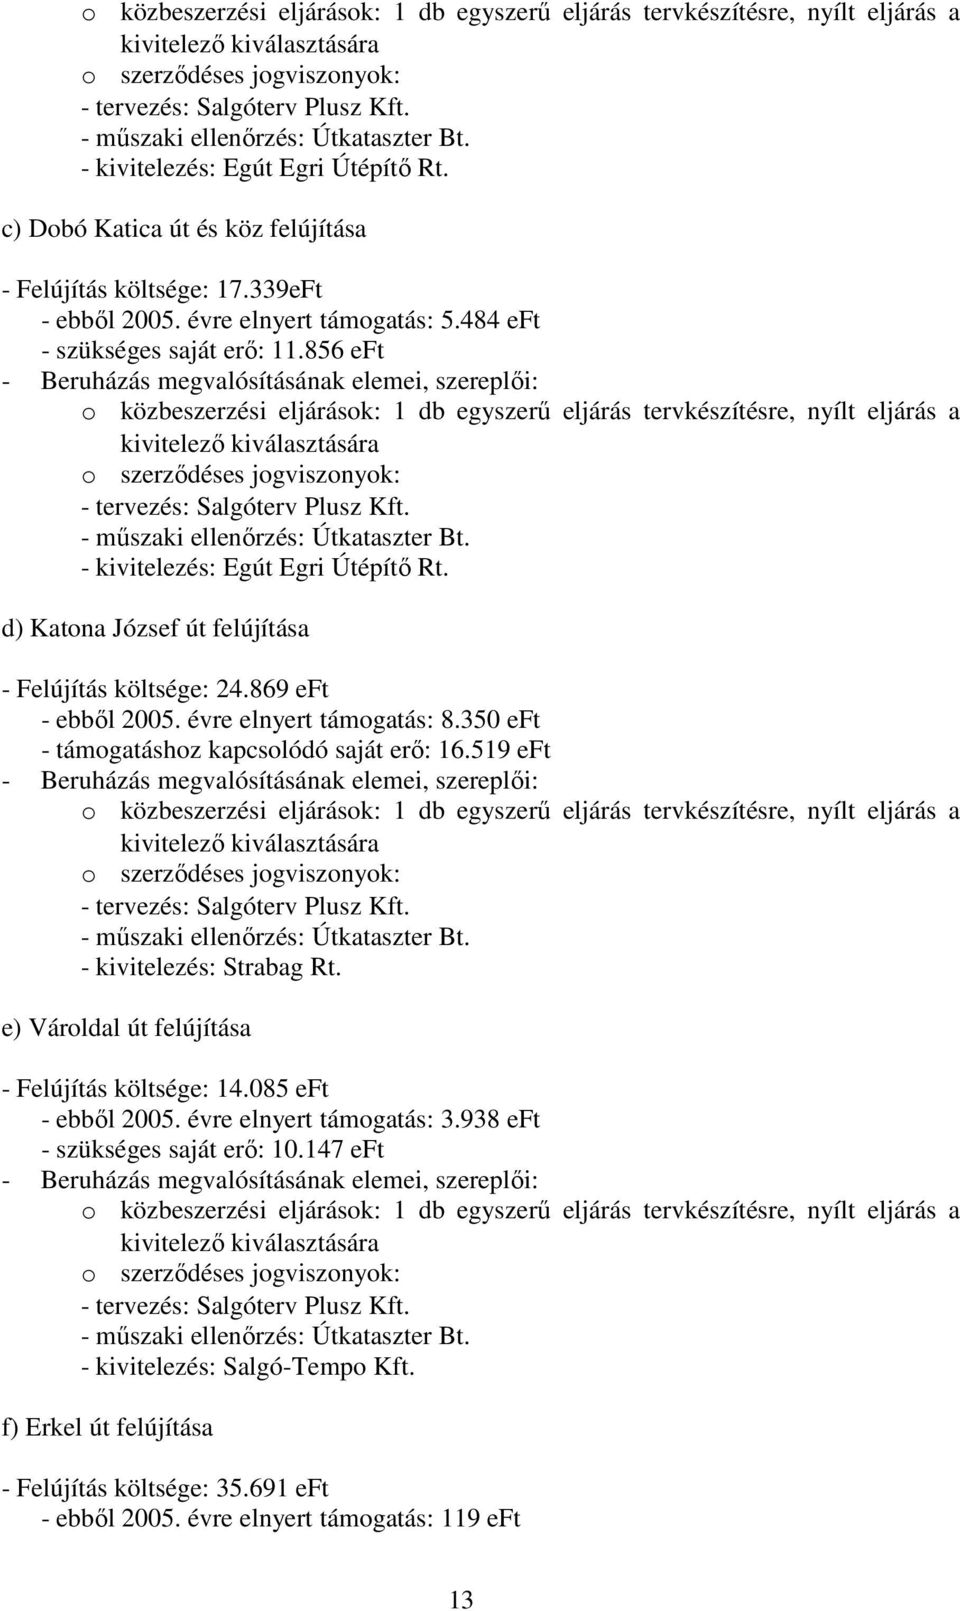 856  - kivitelezés: Egút Egri Útépítı Rt. d) Katona József út felújítása - Felújítás költsége: 24.869 - ebbıl 2005. évre elnyert támogatás: 8.350 - támogatáshoz kapcsolódó saját erı: 16.